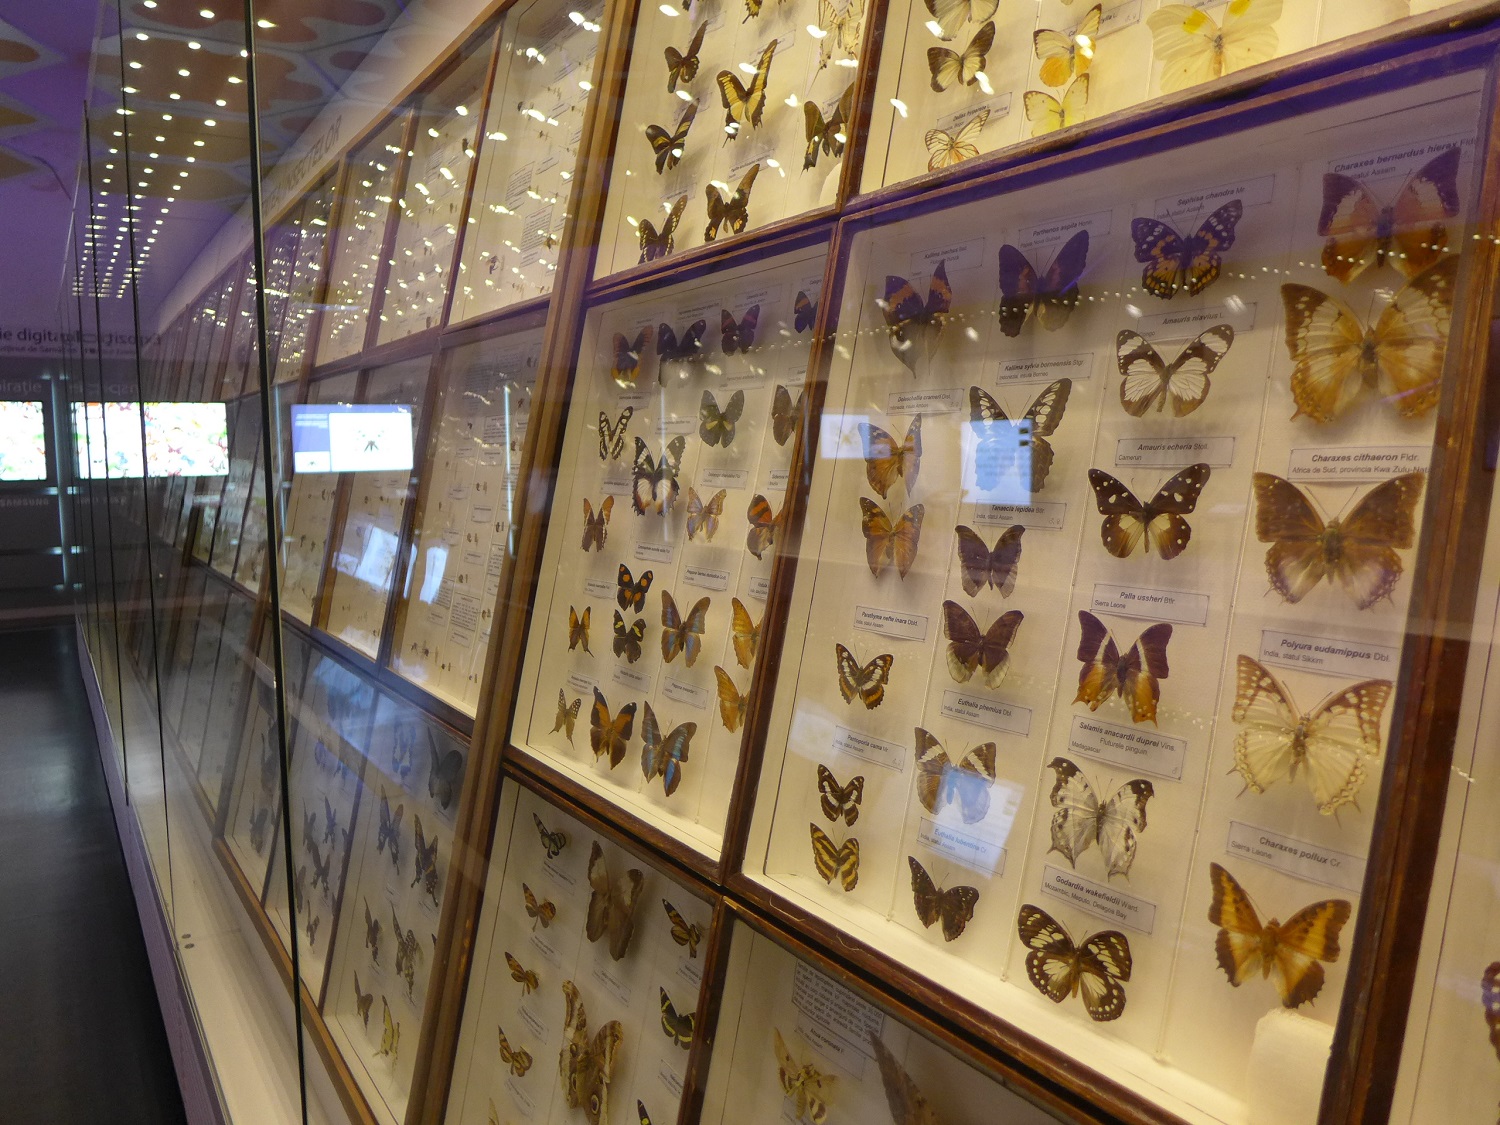 A l’étage, toute une collection d’insectes du monde entier, notamment des papillons.